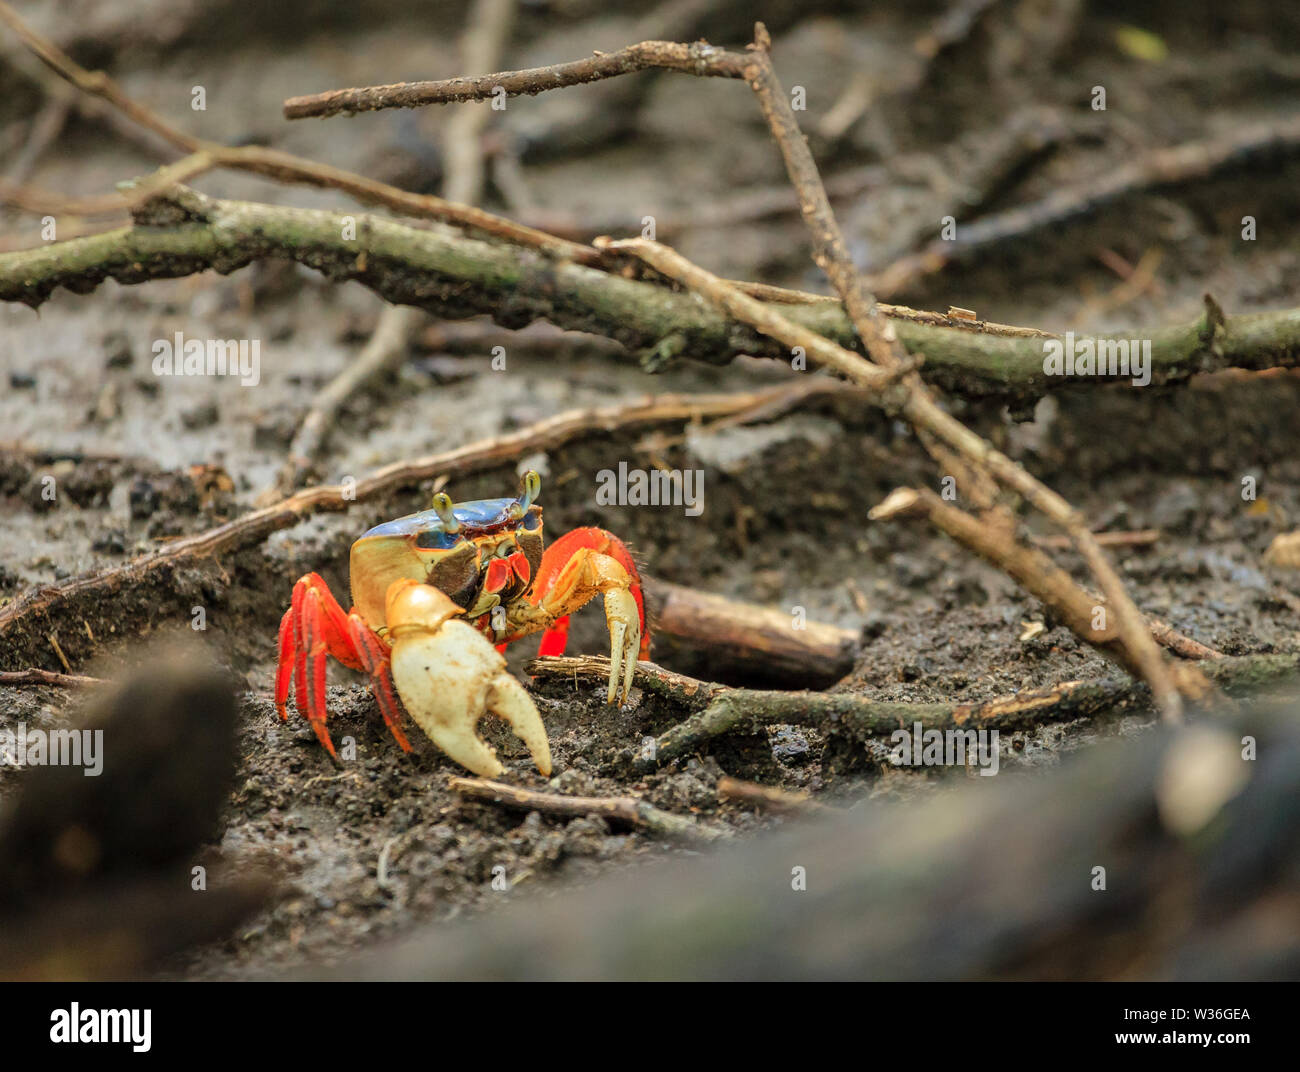 Close-up immagine di una terra rossa del granchio nella Santa Rosa parco nazionale in Costa Rica Foto Stock